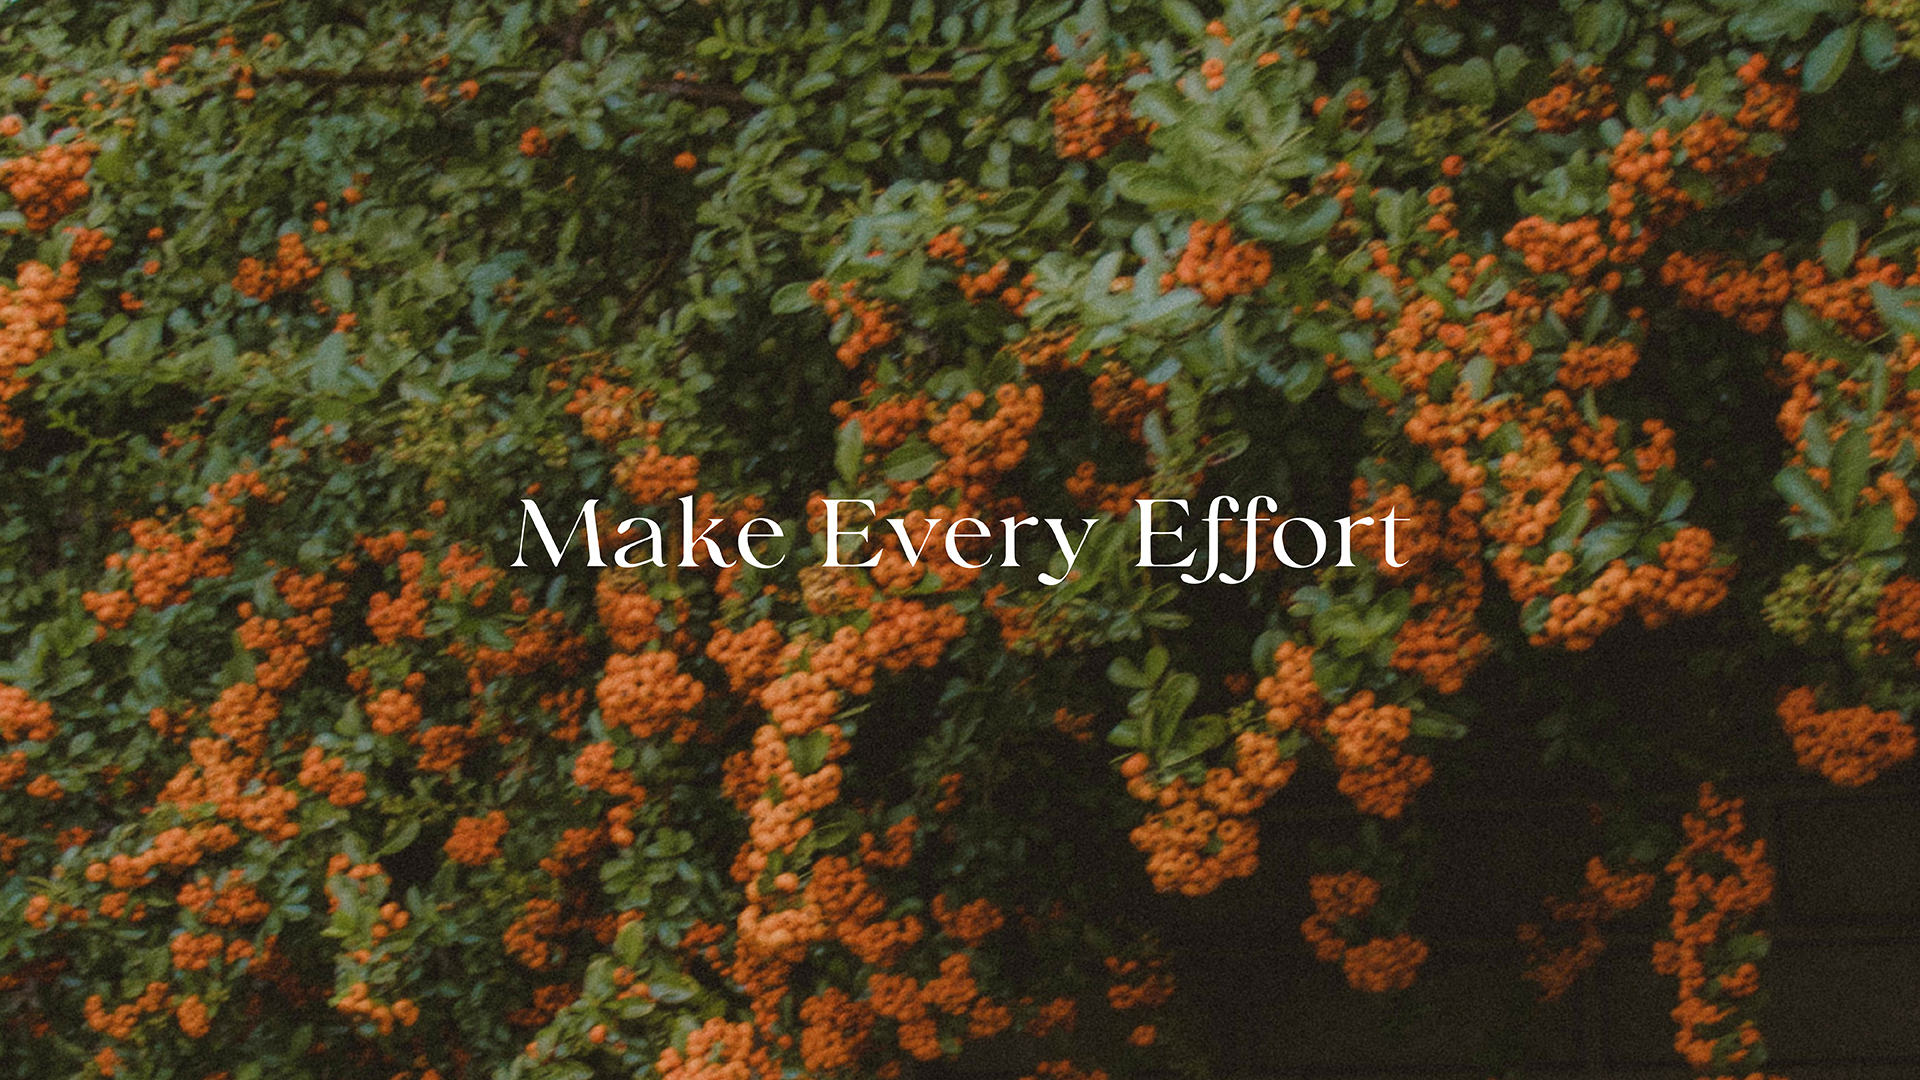 Series: Make Every Effort